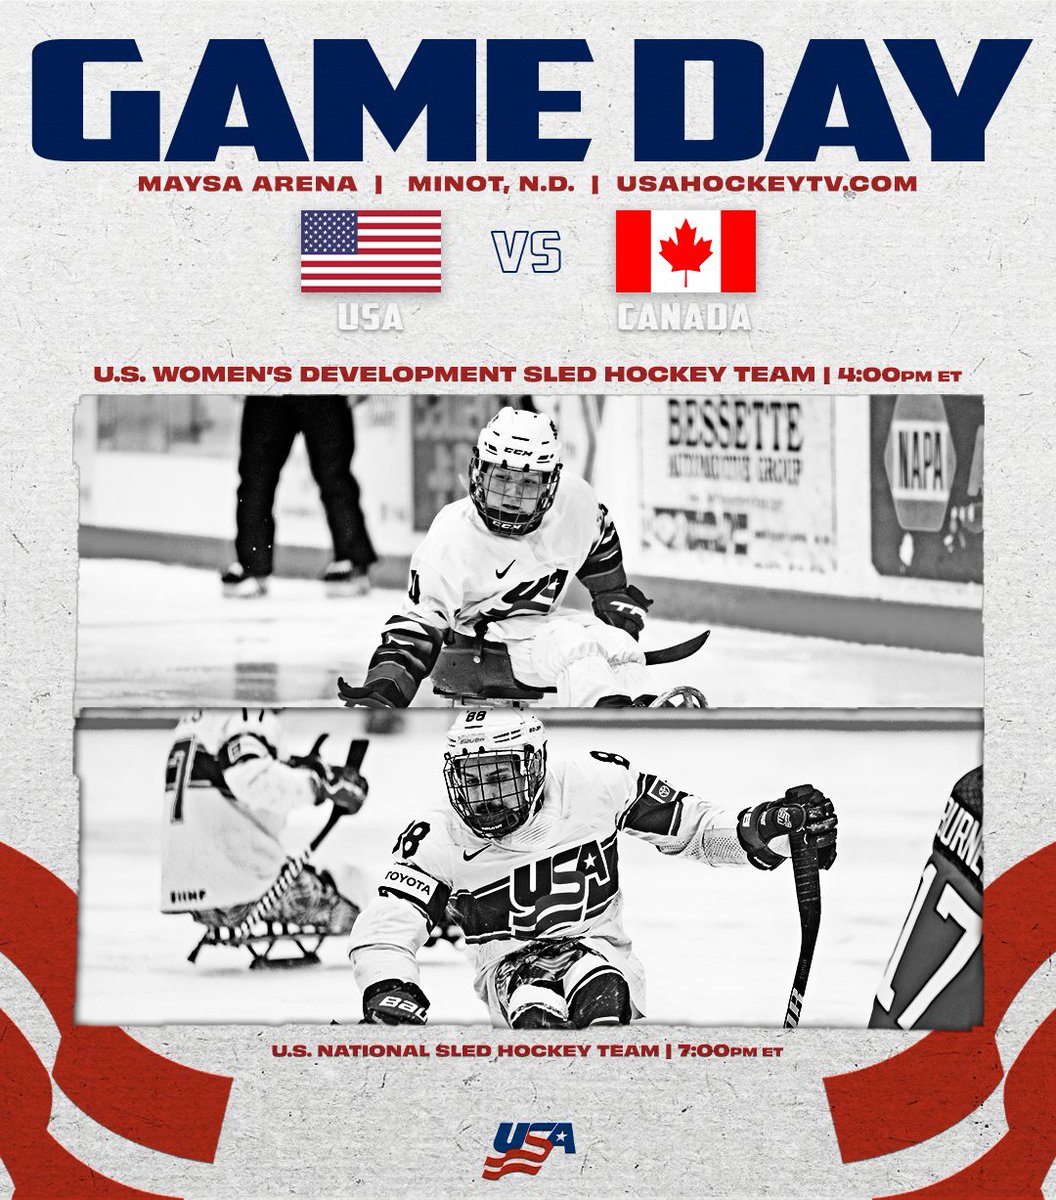 Catch game ✌️ of the 2024 Sled Series today on usahockeytv.com! U.S. Women’s Development Sled Hockey Team → bit.ly/43gkDNL U.S. National Sled Hockey Team → bit.ly/3VhPQ0U